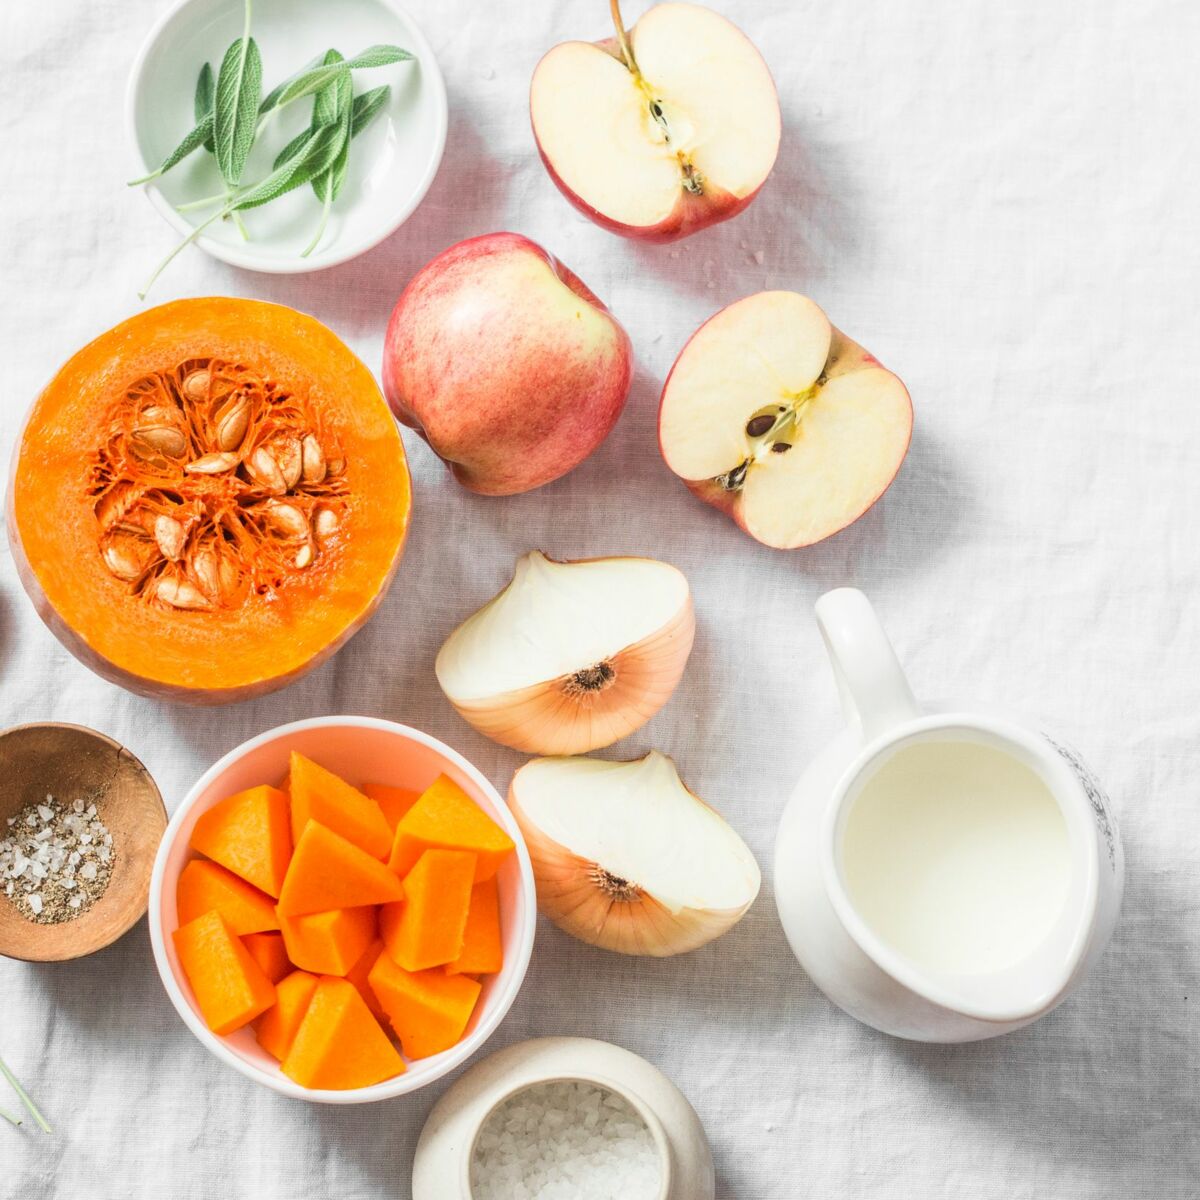 Les fruits et légumes à consommer en février - Conseils santé bien-être